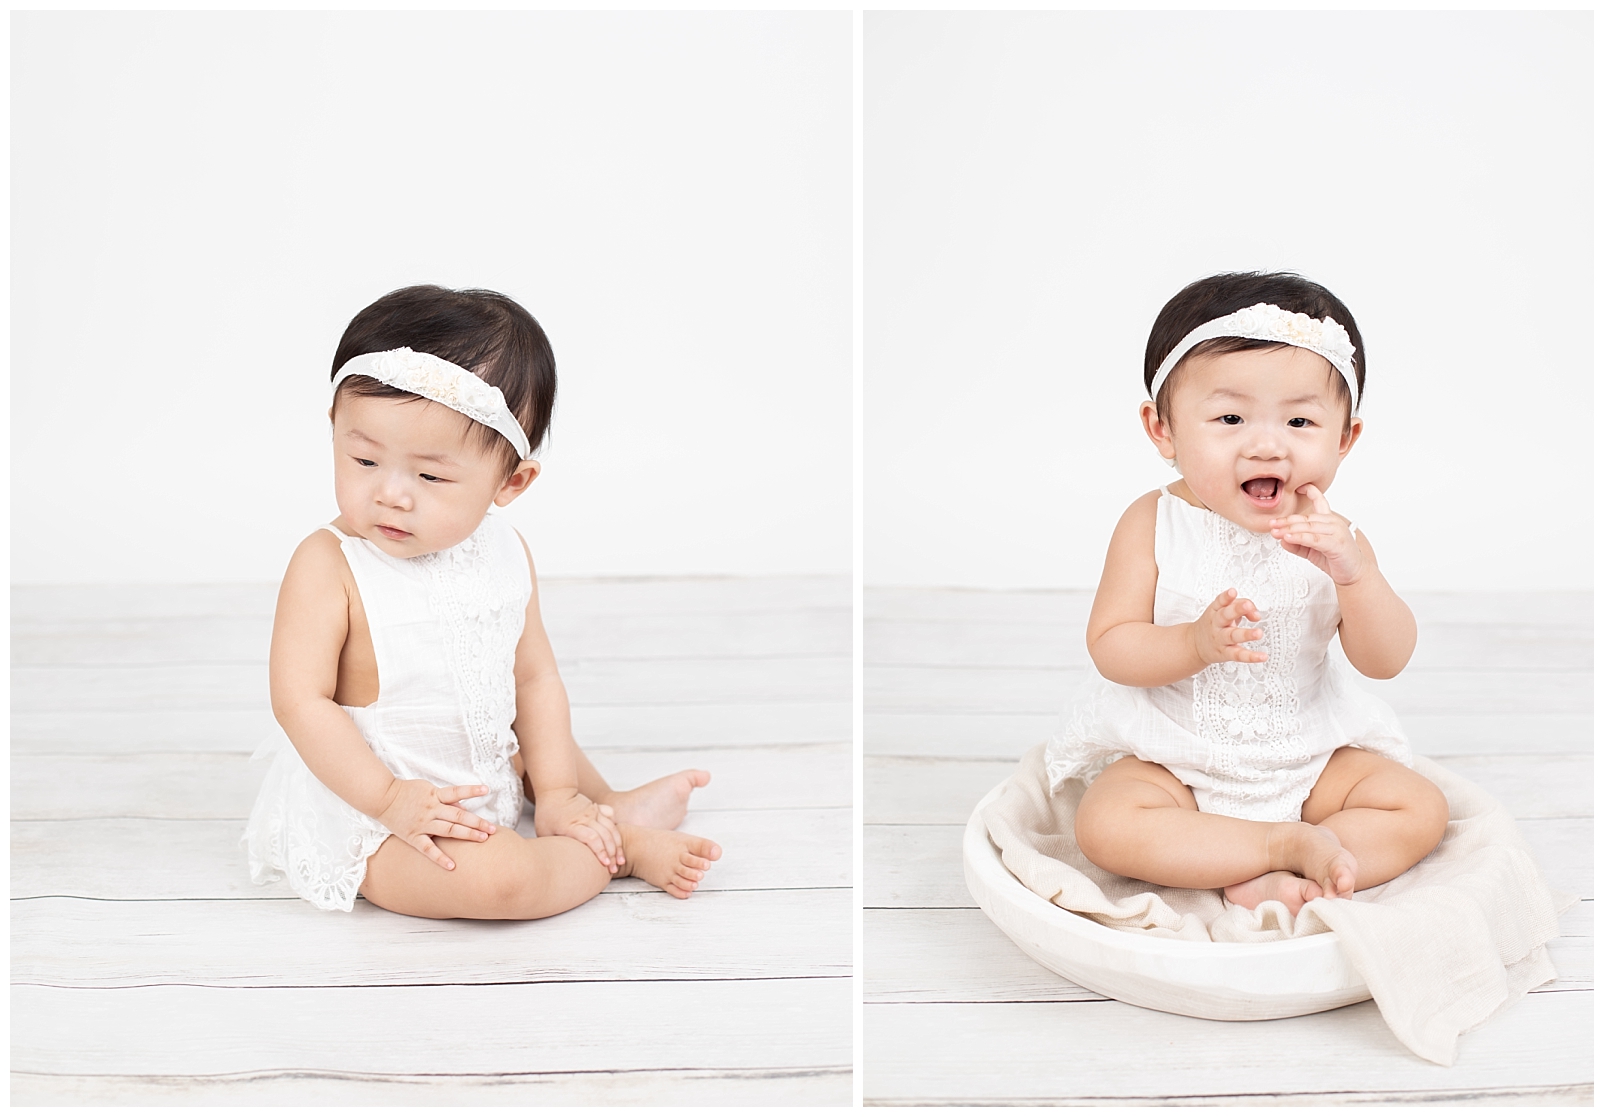 Baby girl in white decorative romper